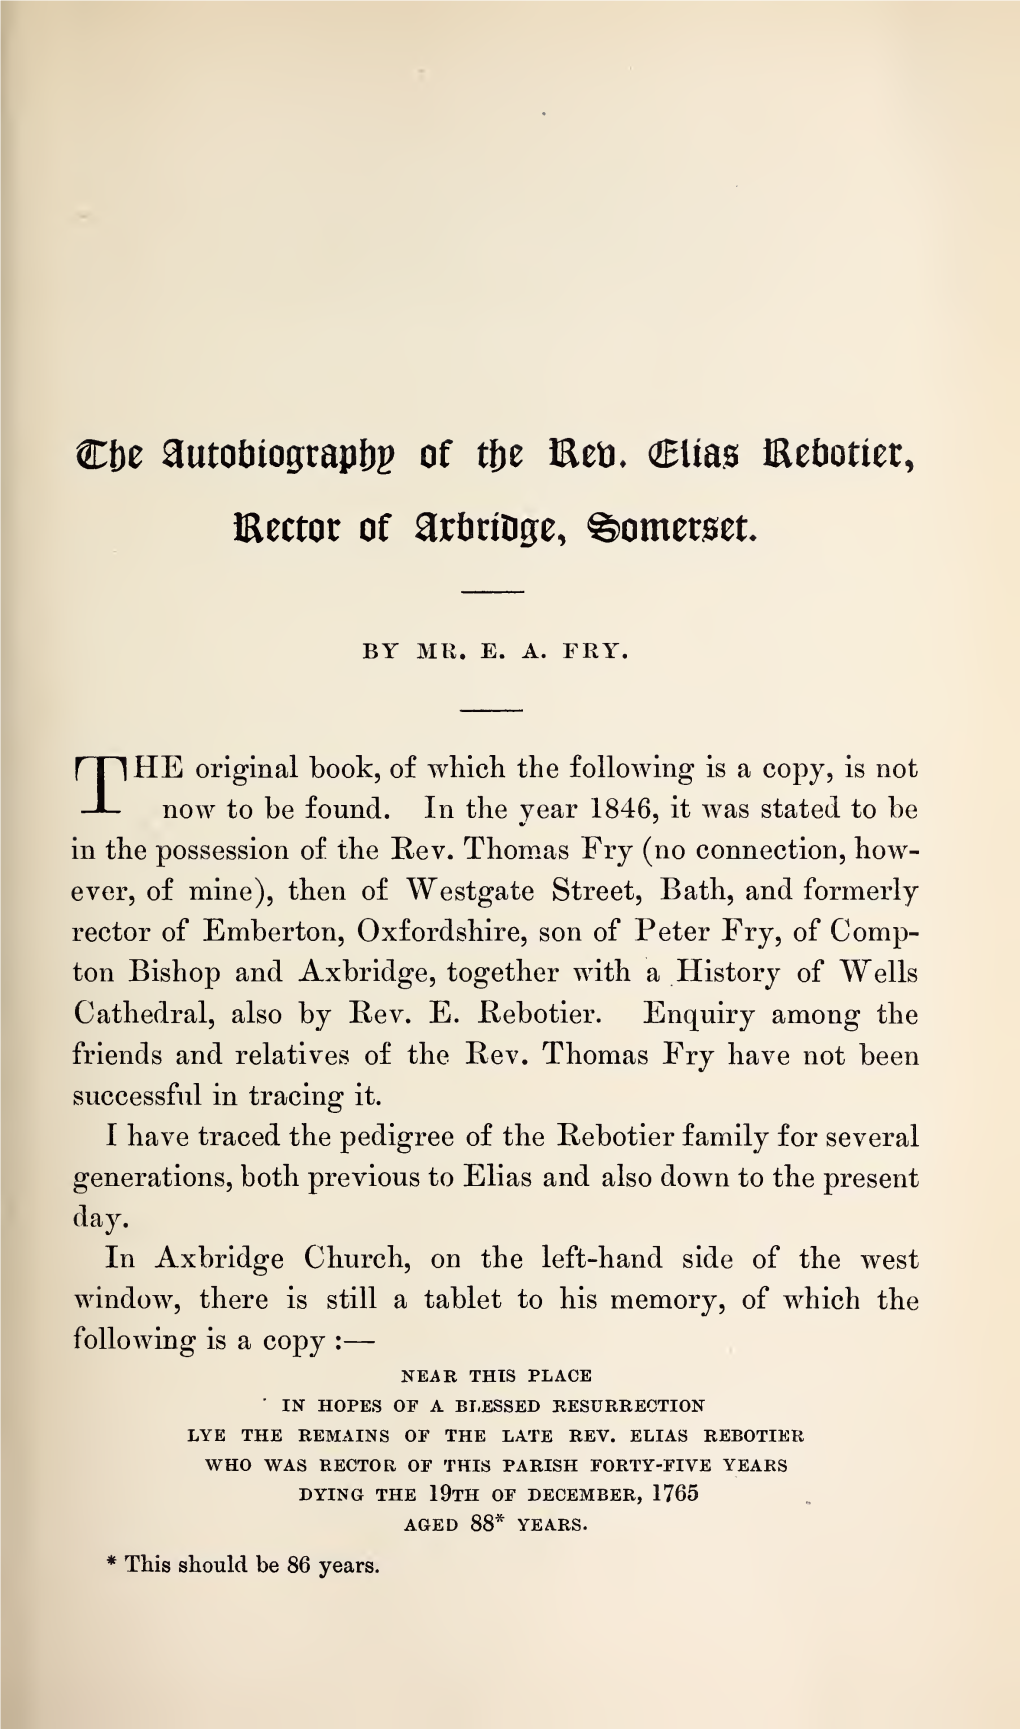 Fry, E A, the Autobiography of the Rev. Elias Rebotier, Rector Of